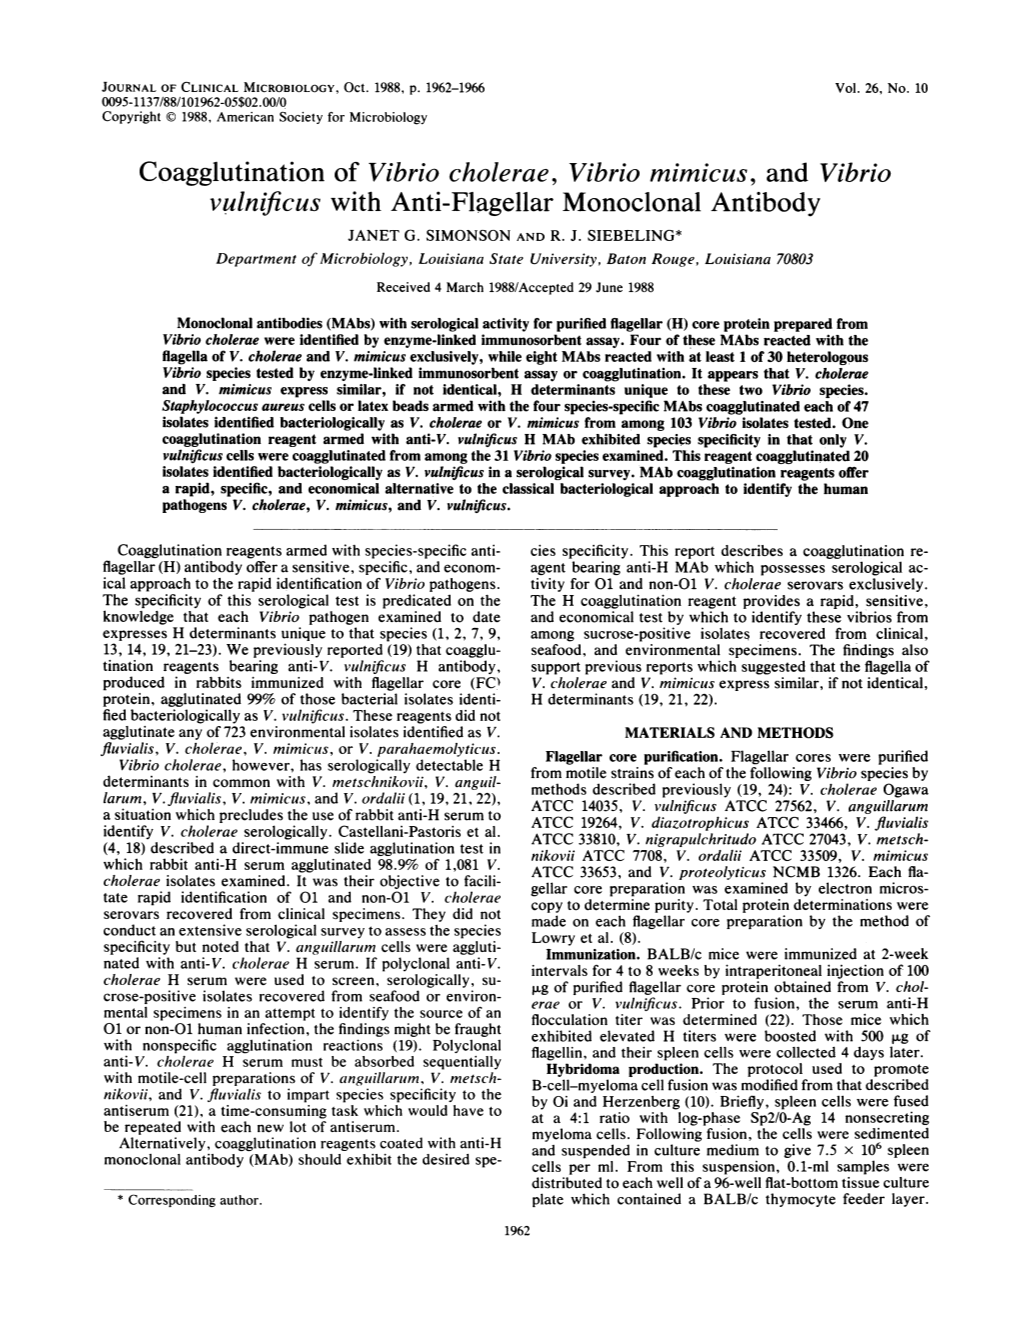 Coagglutination of Vibrio Cholerae, Vibrio Mimicus, and Vibrio Vulnificus with Anti-Flagellar Monoclonal Antibody JANET G